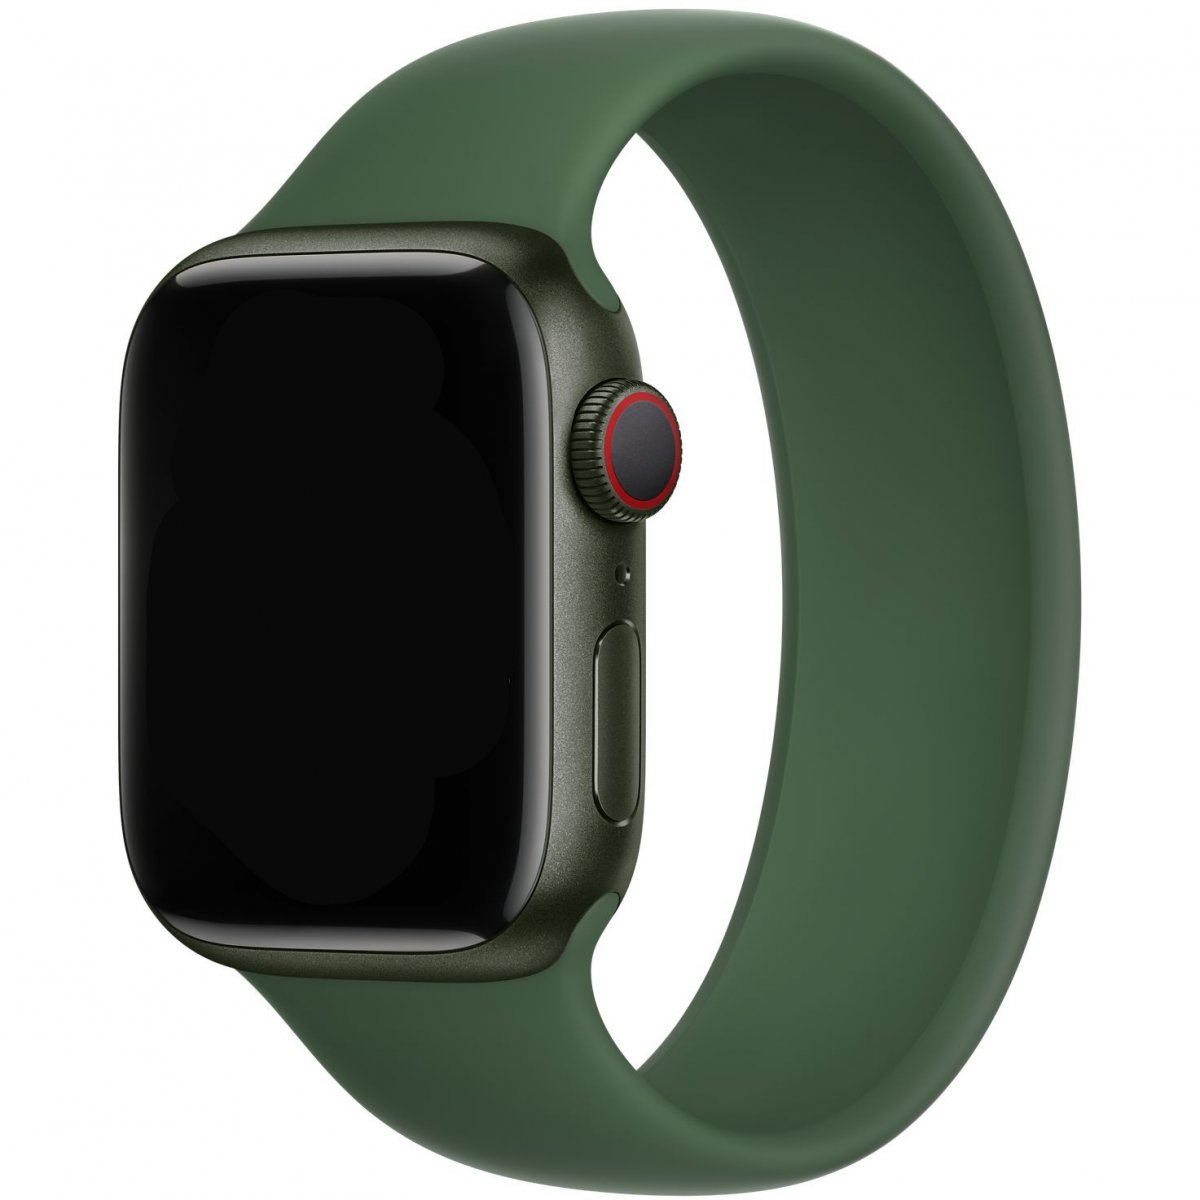 Řemínek iMore Solo Loop Apple Watch Series 1/2/3 42mm - Jetelově zelená (L)